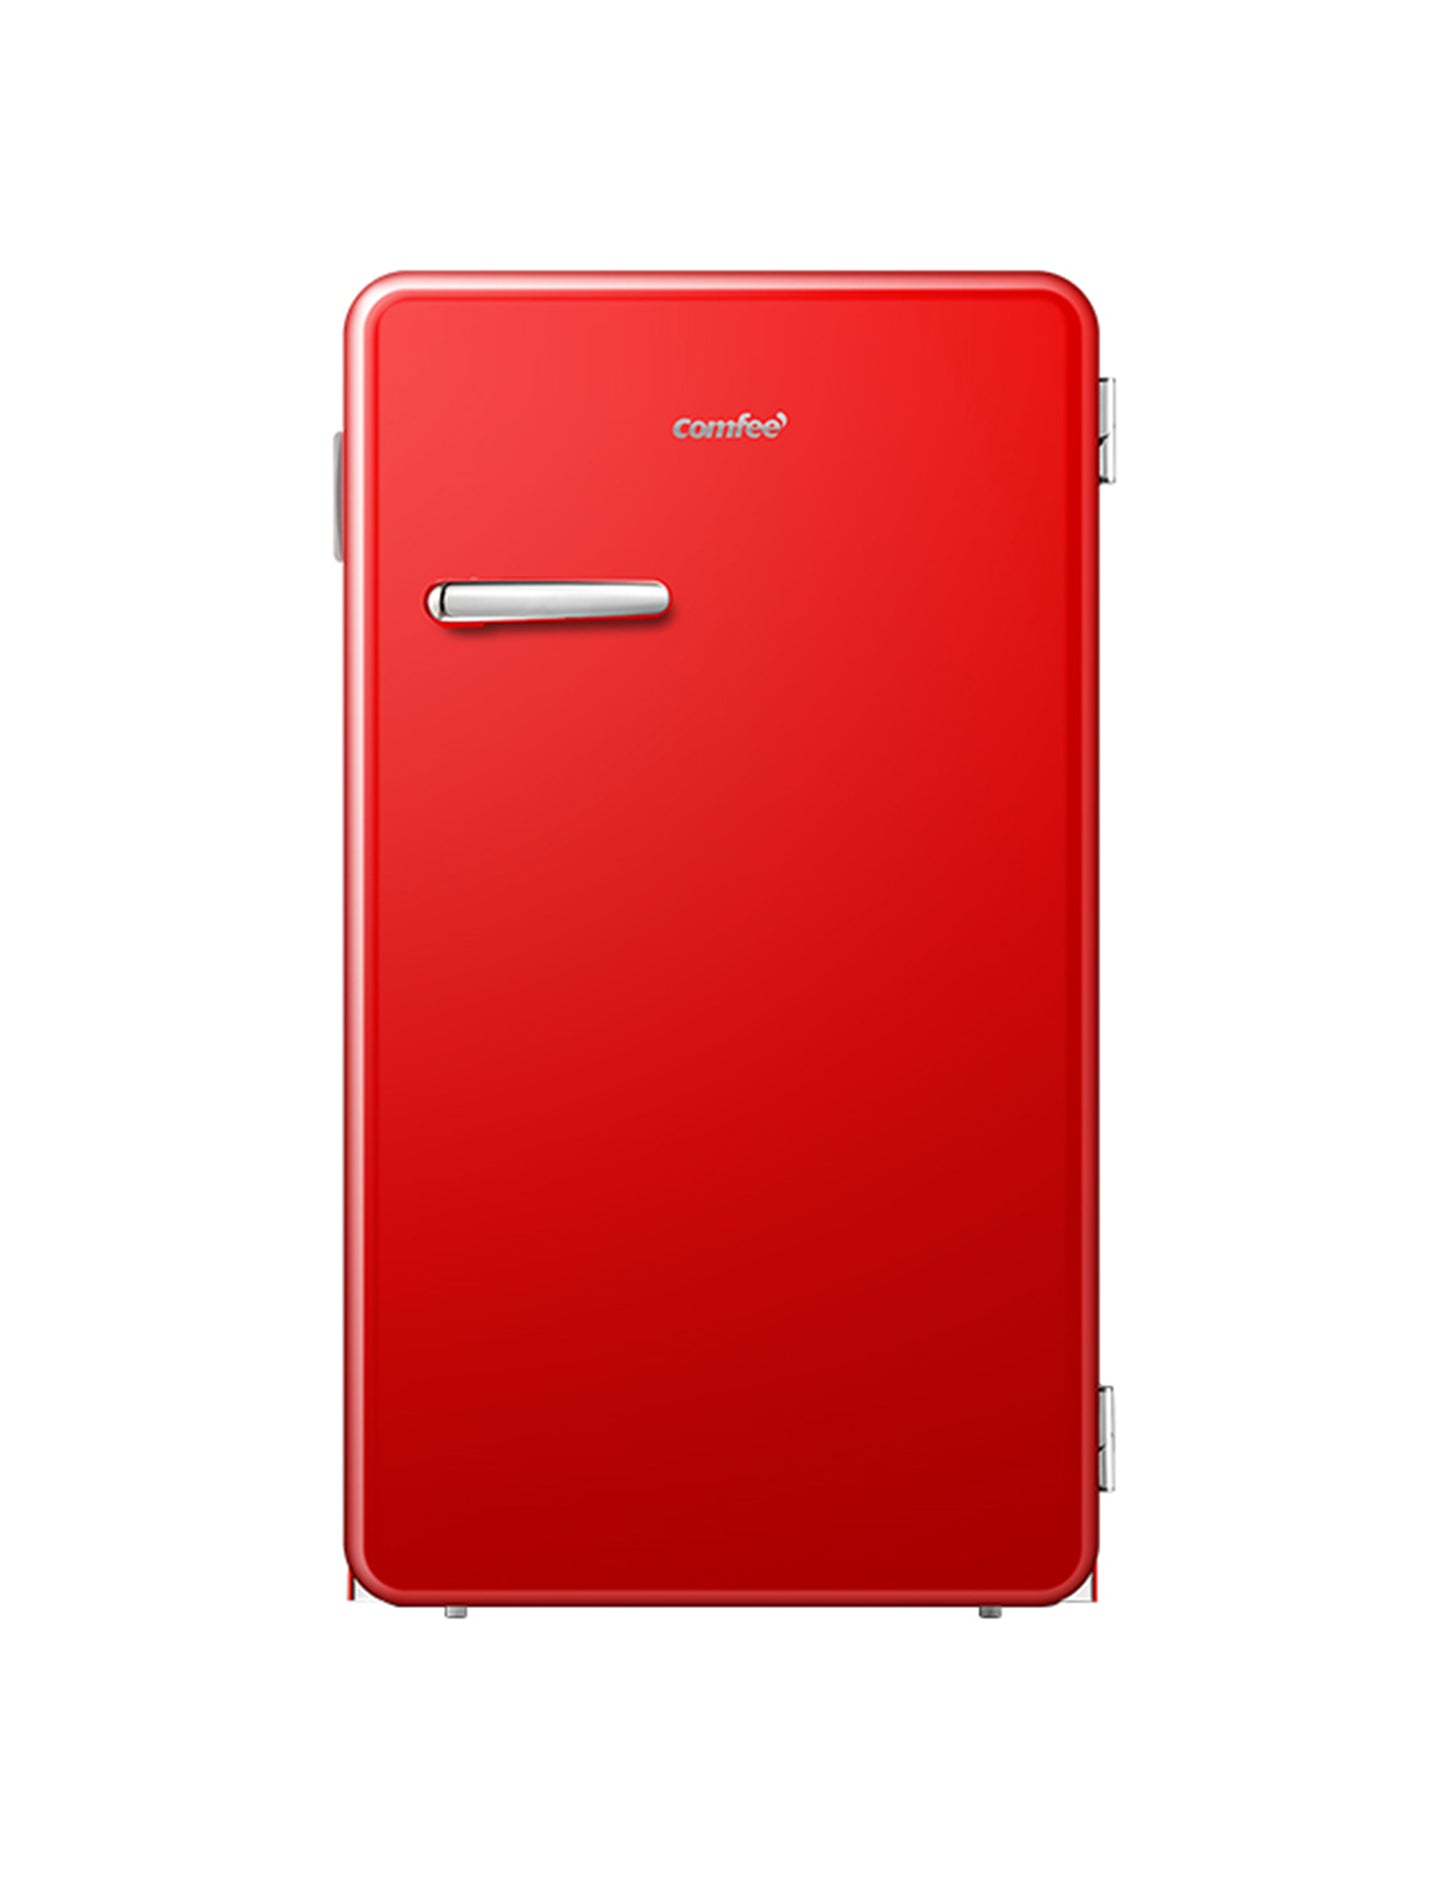 red retro compact refrigerator